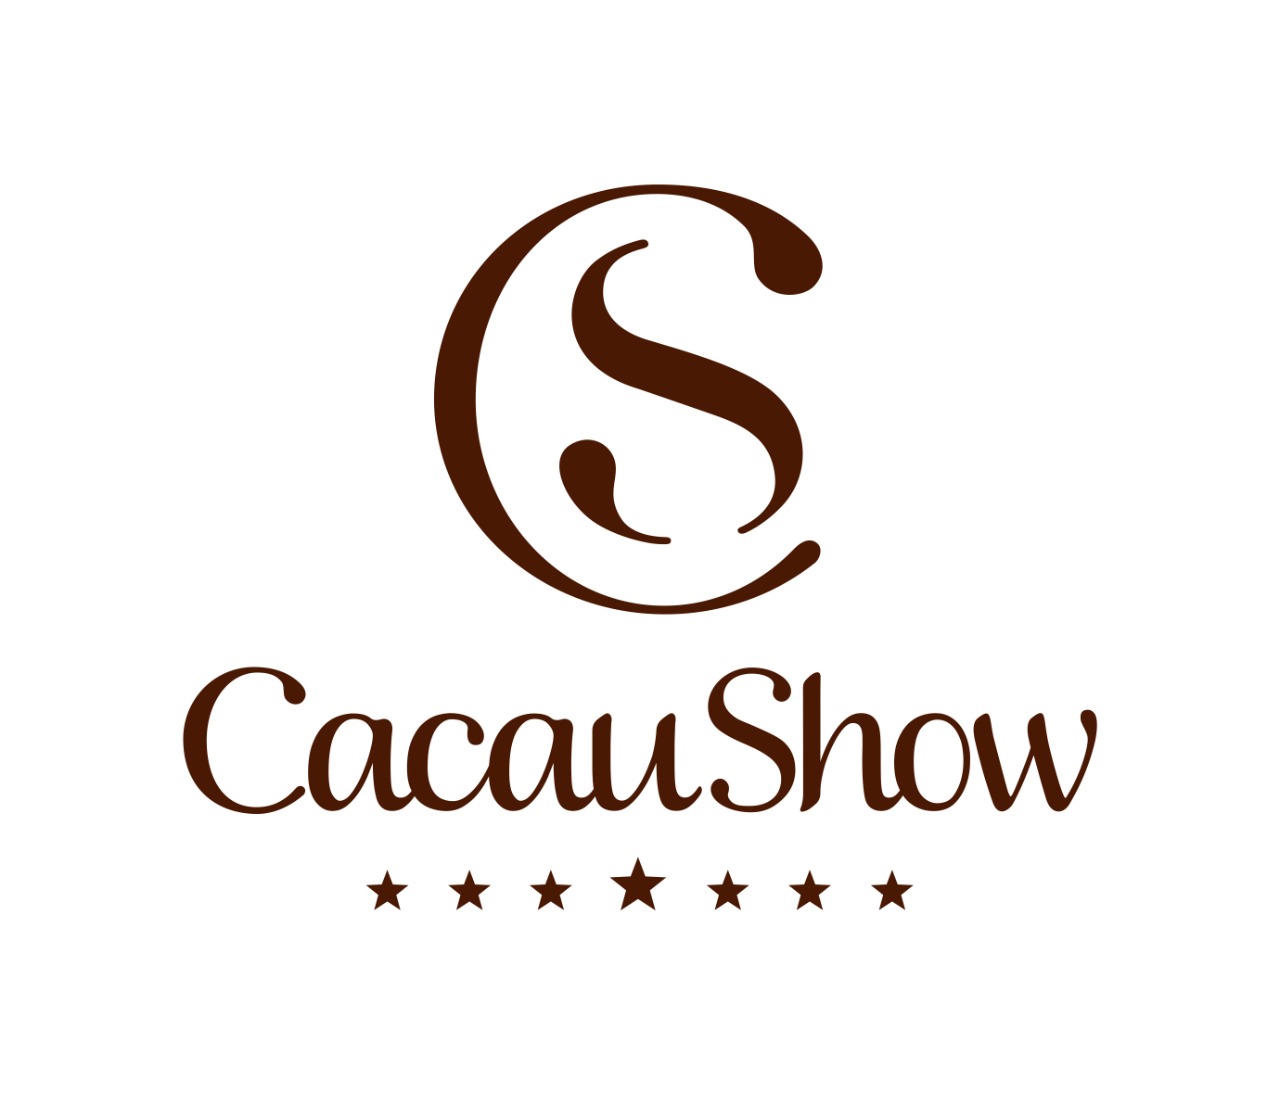 Cartão Atacadão e Cacau Show se juntam para oferecer vantagens aos clientes!